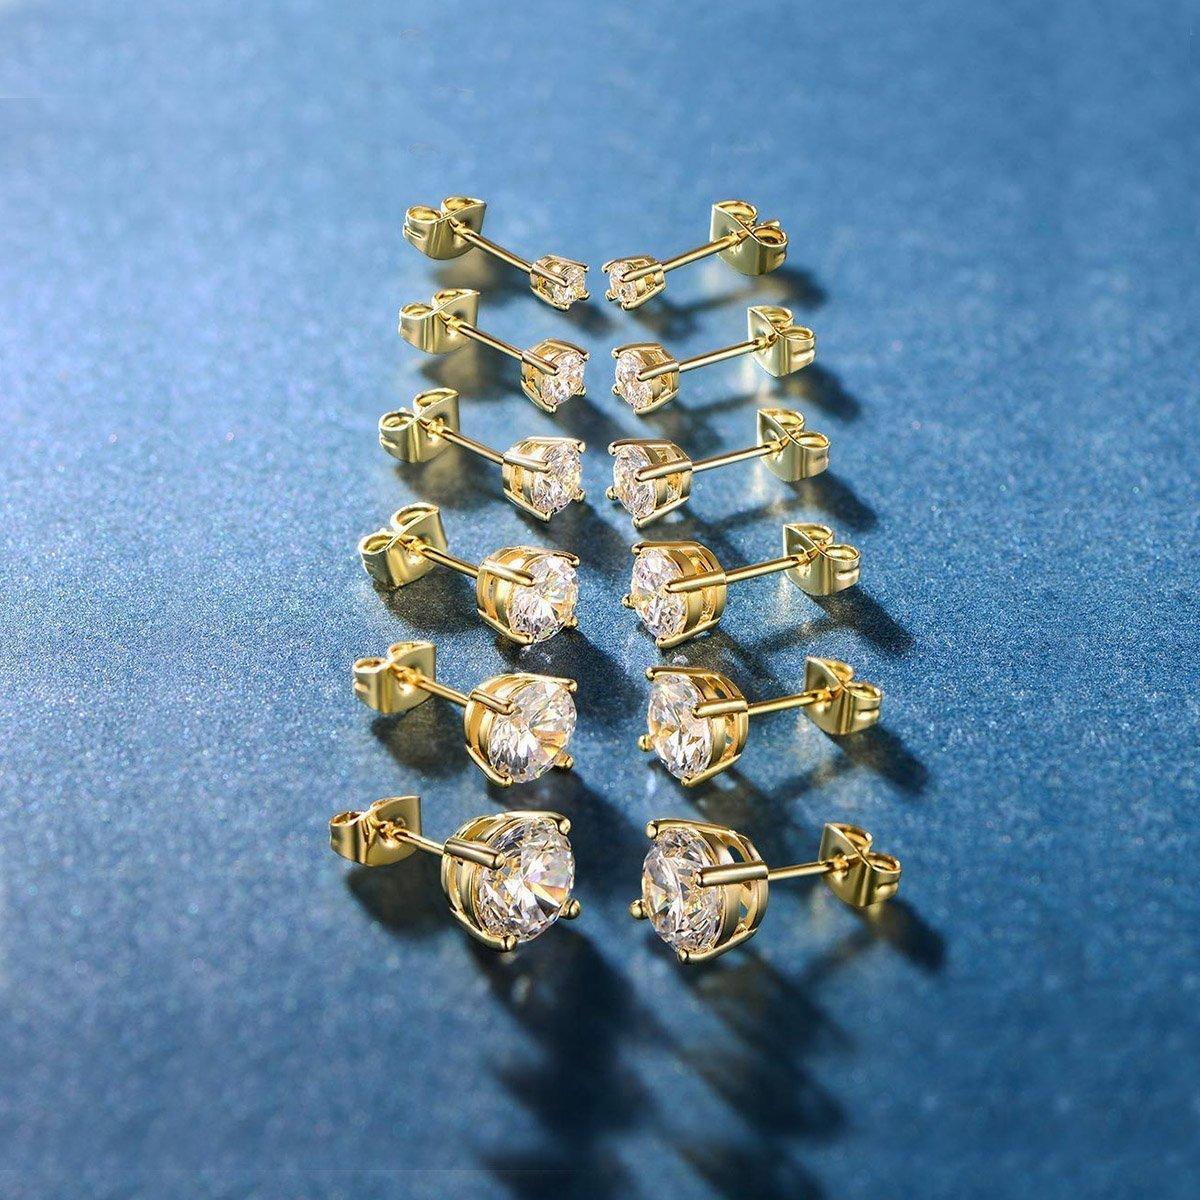 Women's Jewelry - Earrings Crystal Gemstone 9.00 Cttw Stud Earrings Set 18K White Gold...